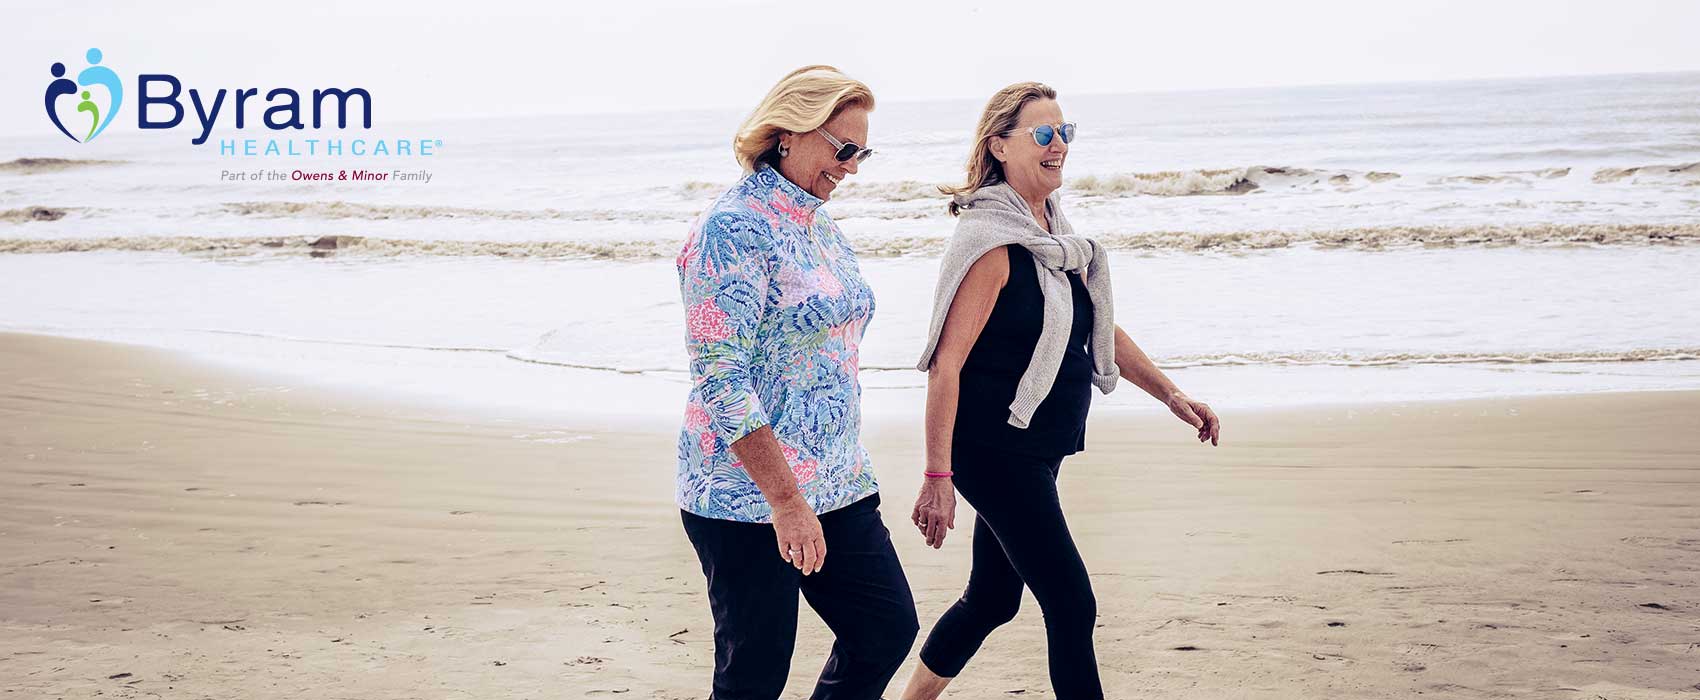 Two women walking on a beach.